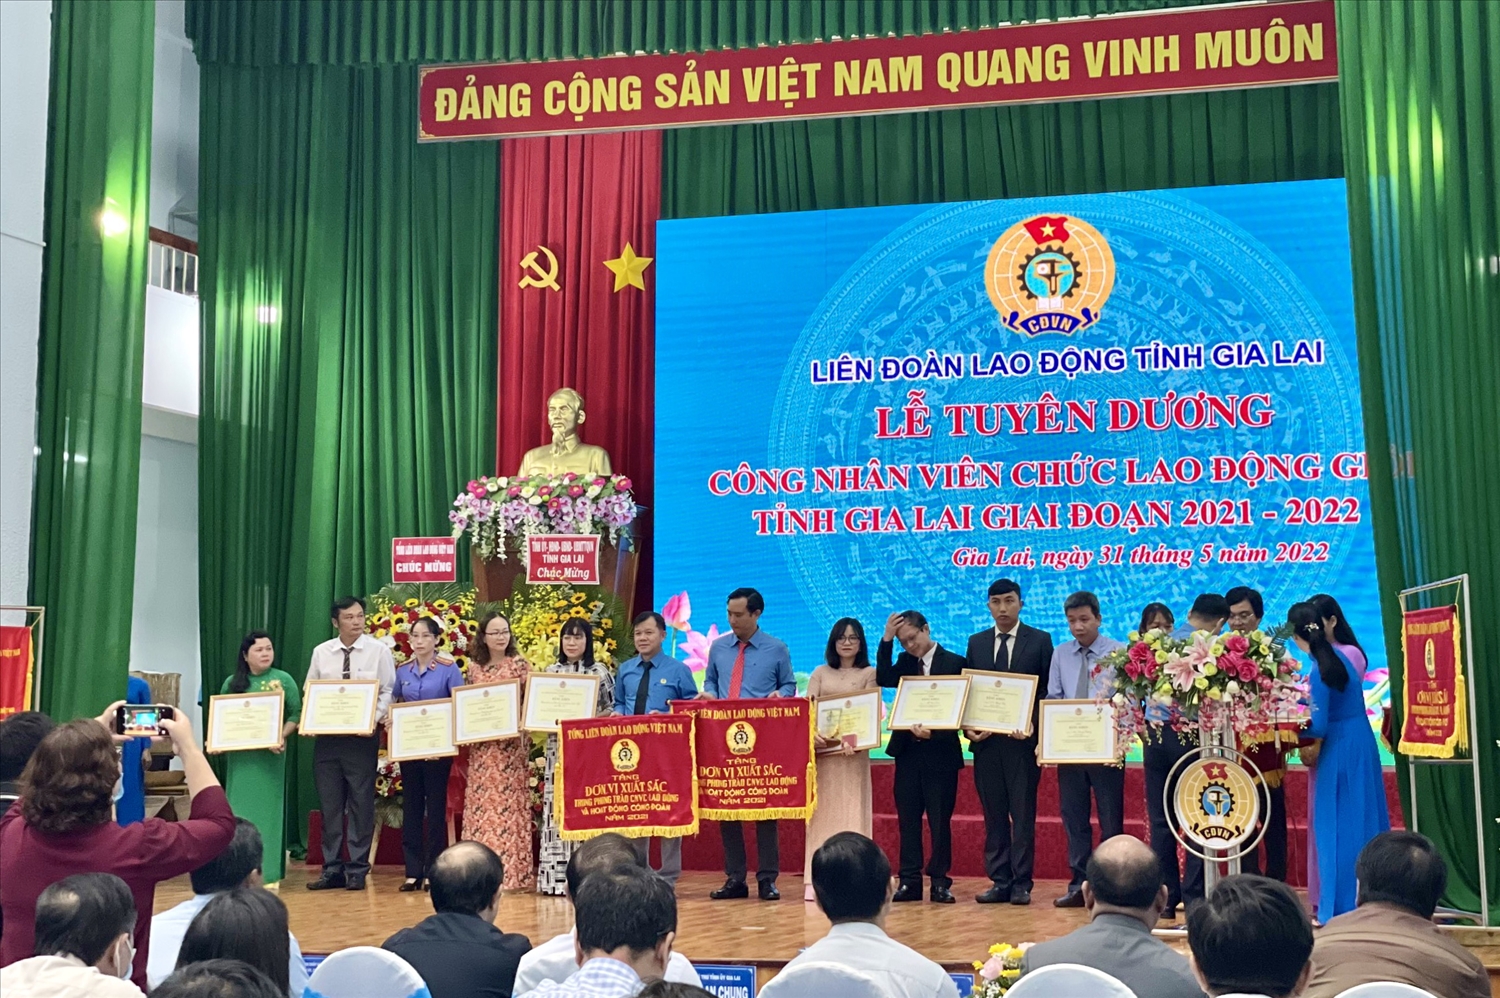 Liên đoàn Lao động tỉnh Gia Lai đã vinh dự được đón nhận Cờ Thi đua đơn vị xuất sắc của Thủ tướng Chính phủ và Tổng Liên đoàn Lao động Việt Nam